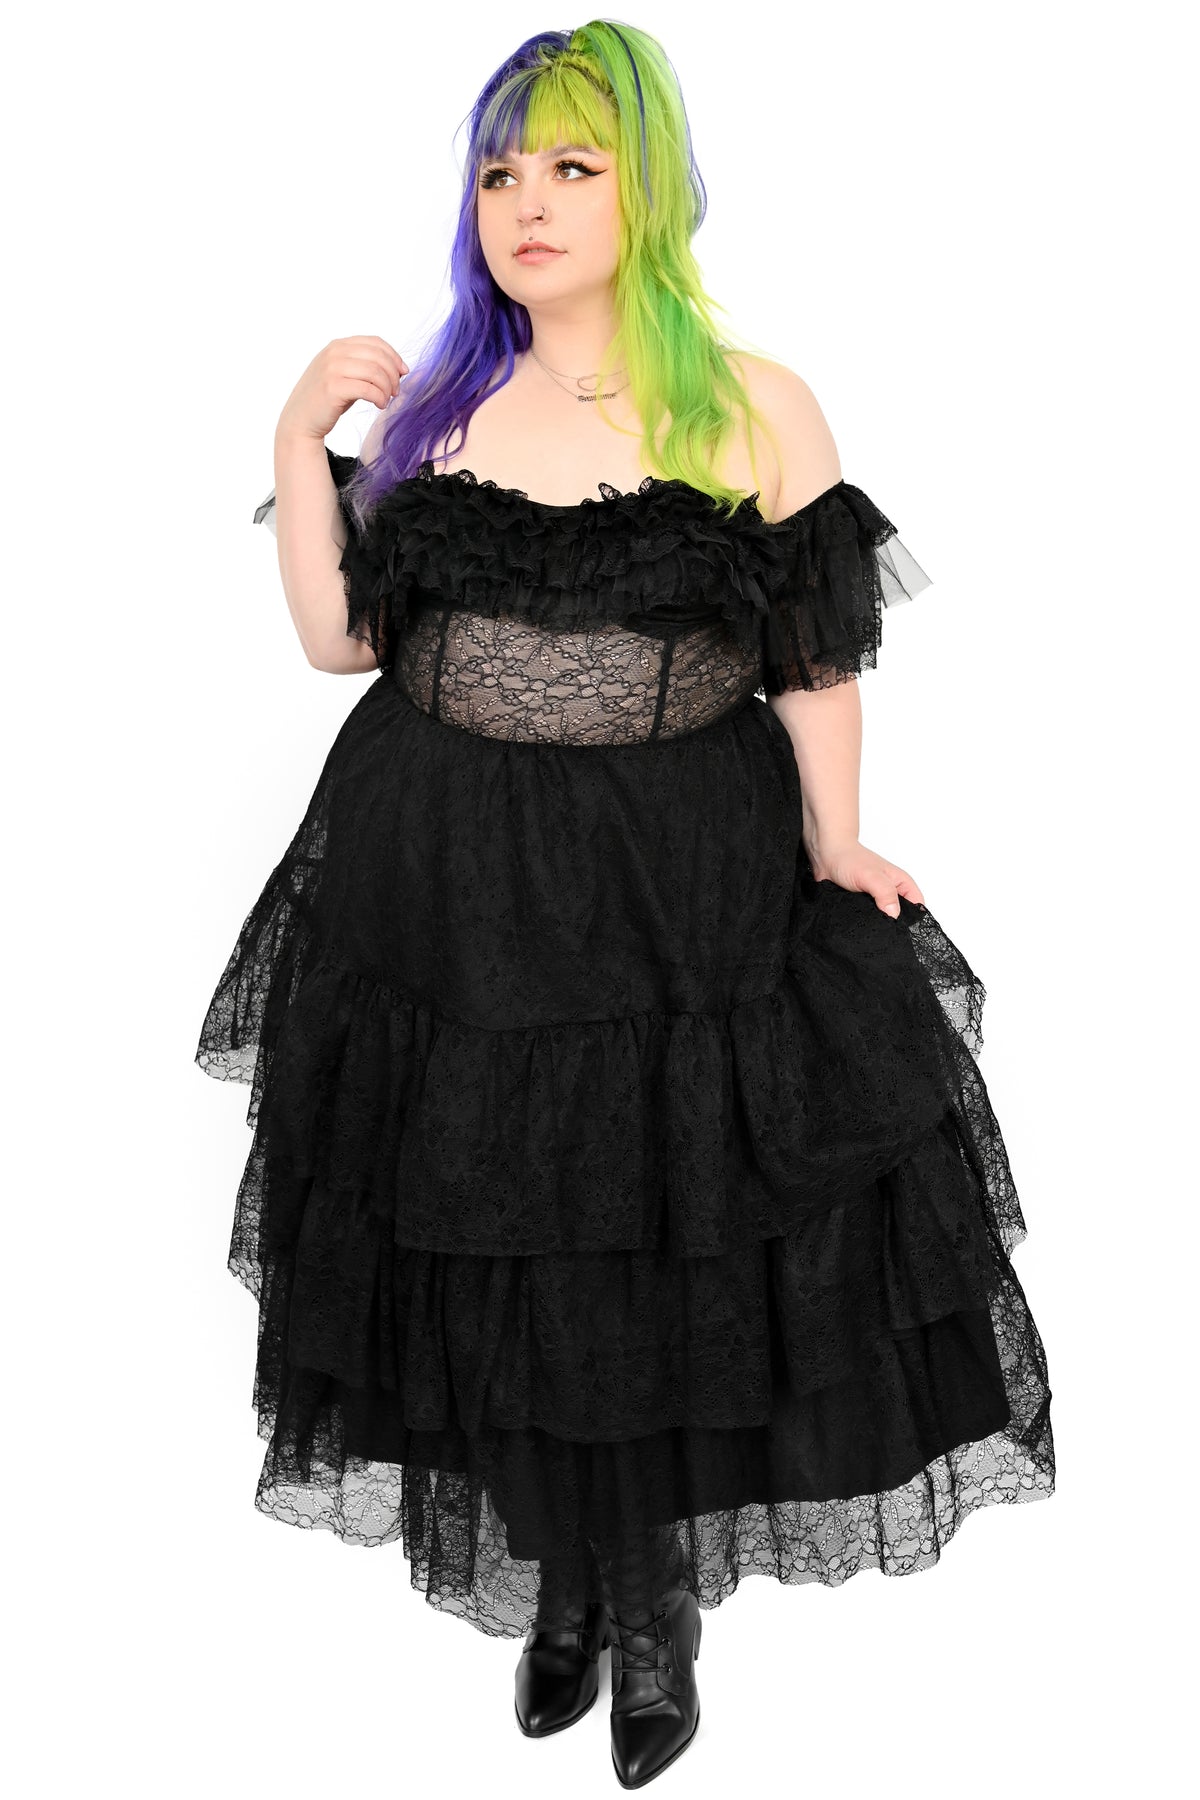 Nevermore Party Dress - S/M/L/XL left!